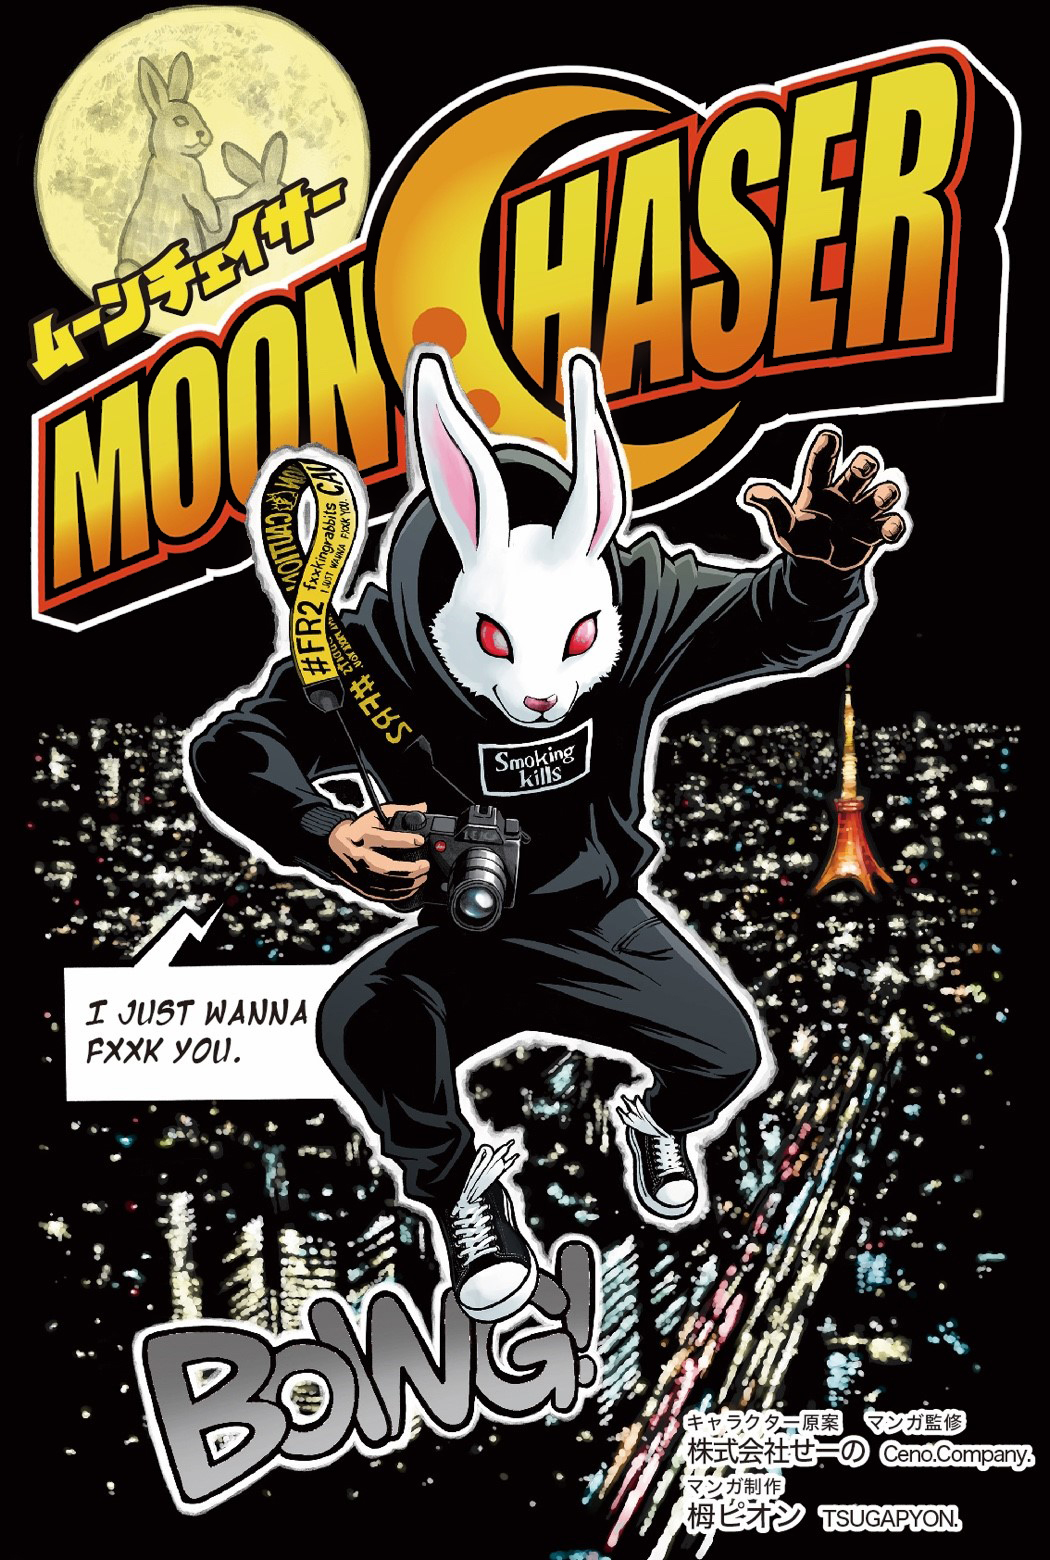 #FR2が新たな取り組みとしてWEBコミック
「MOON CHASER」(ムーンチェイサー)の連載スタート